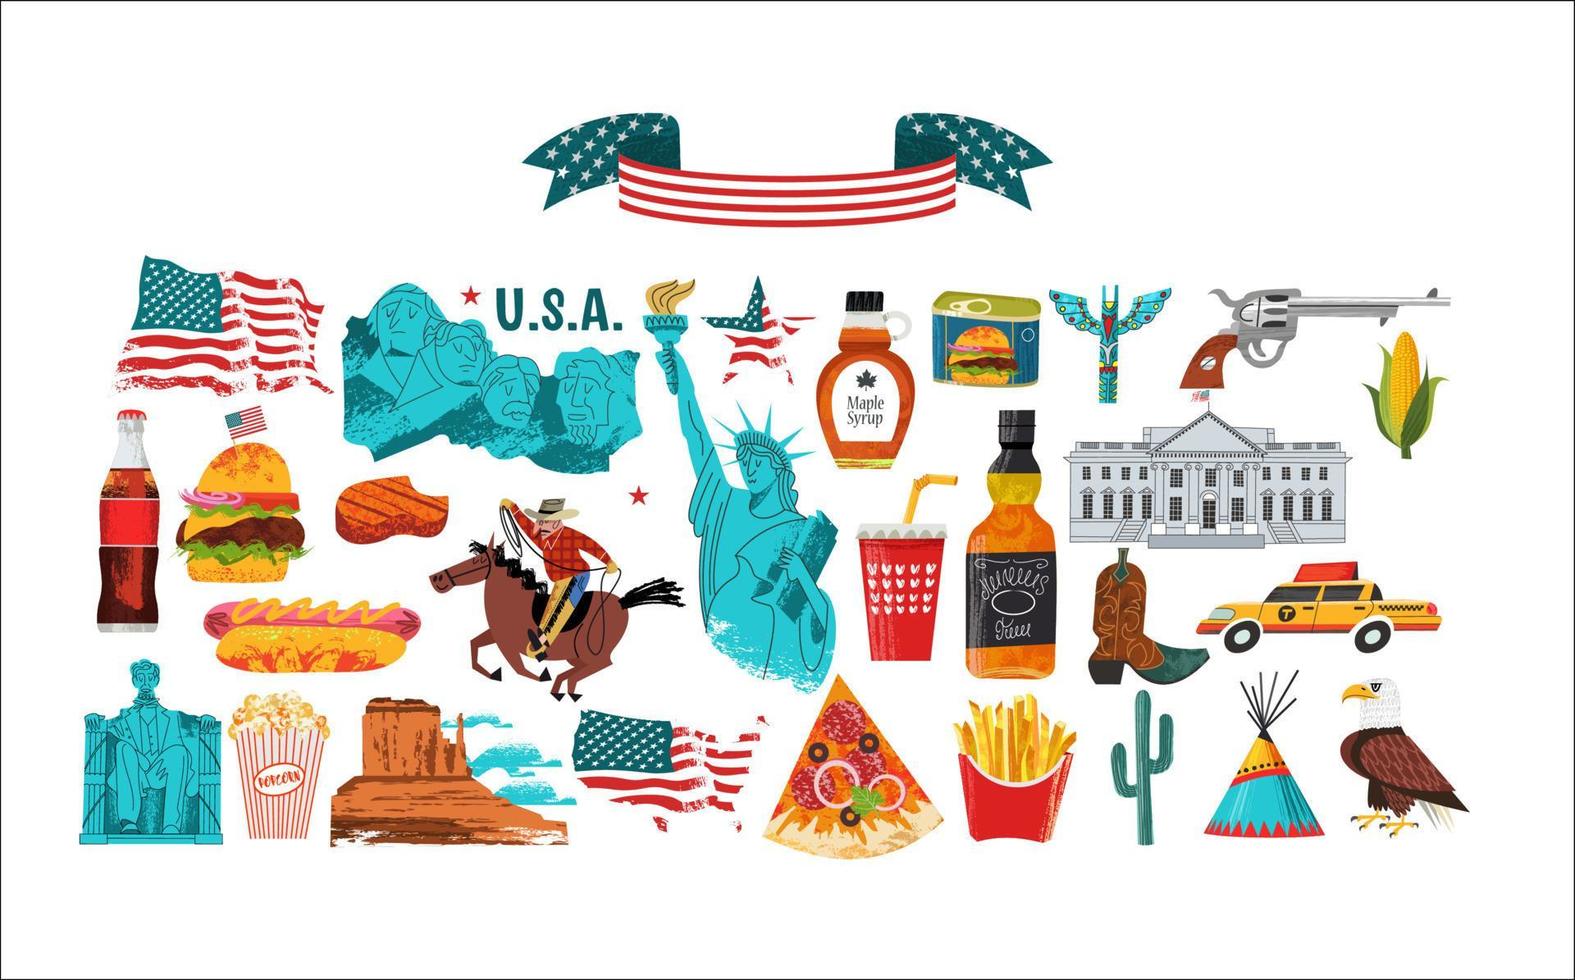 usa. stor samling av föremål, attraktioner, traditioner, souvenirer och mat från Amerika. vektor illustration.